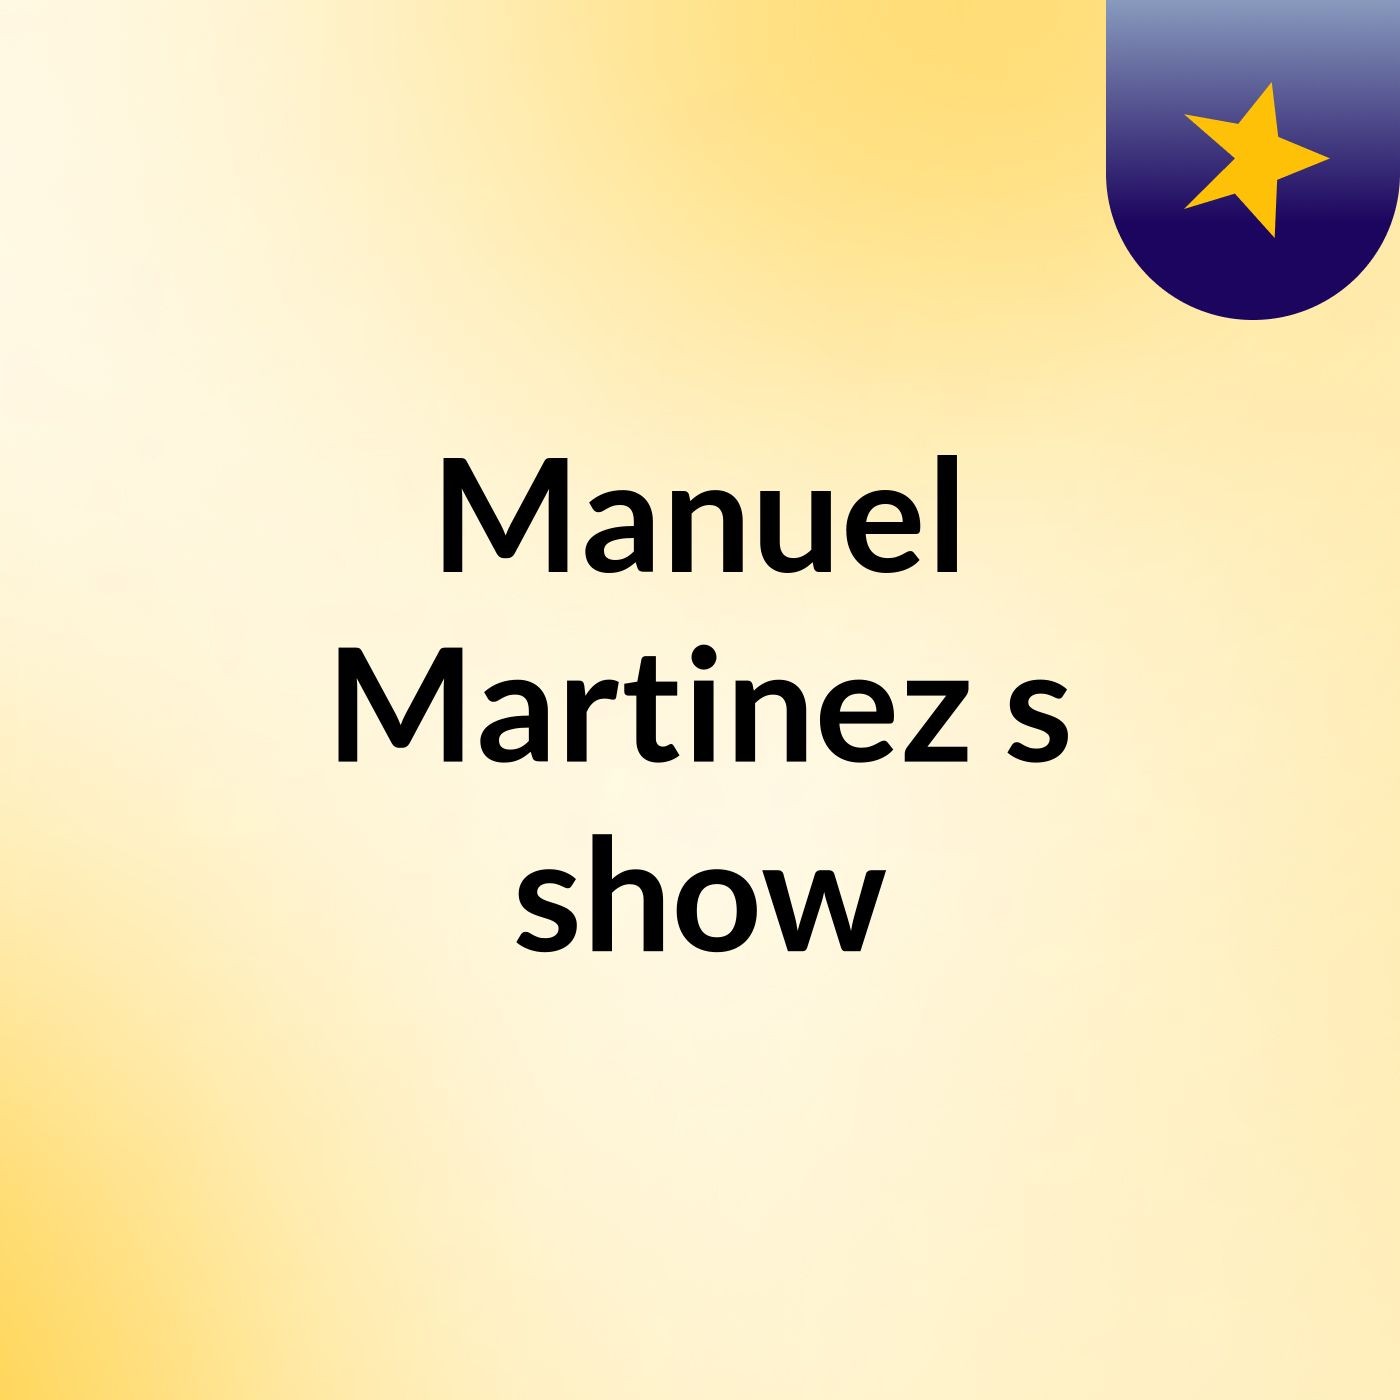 Manuel Martinez's show